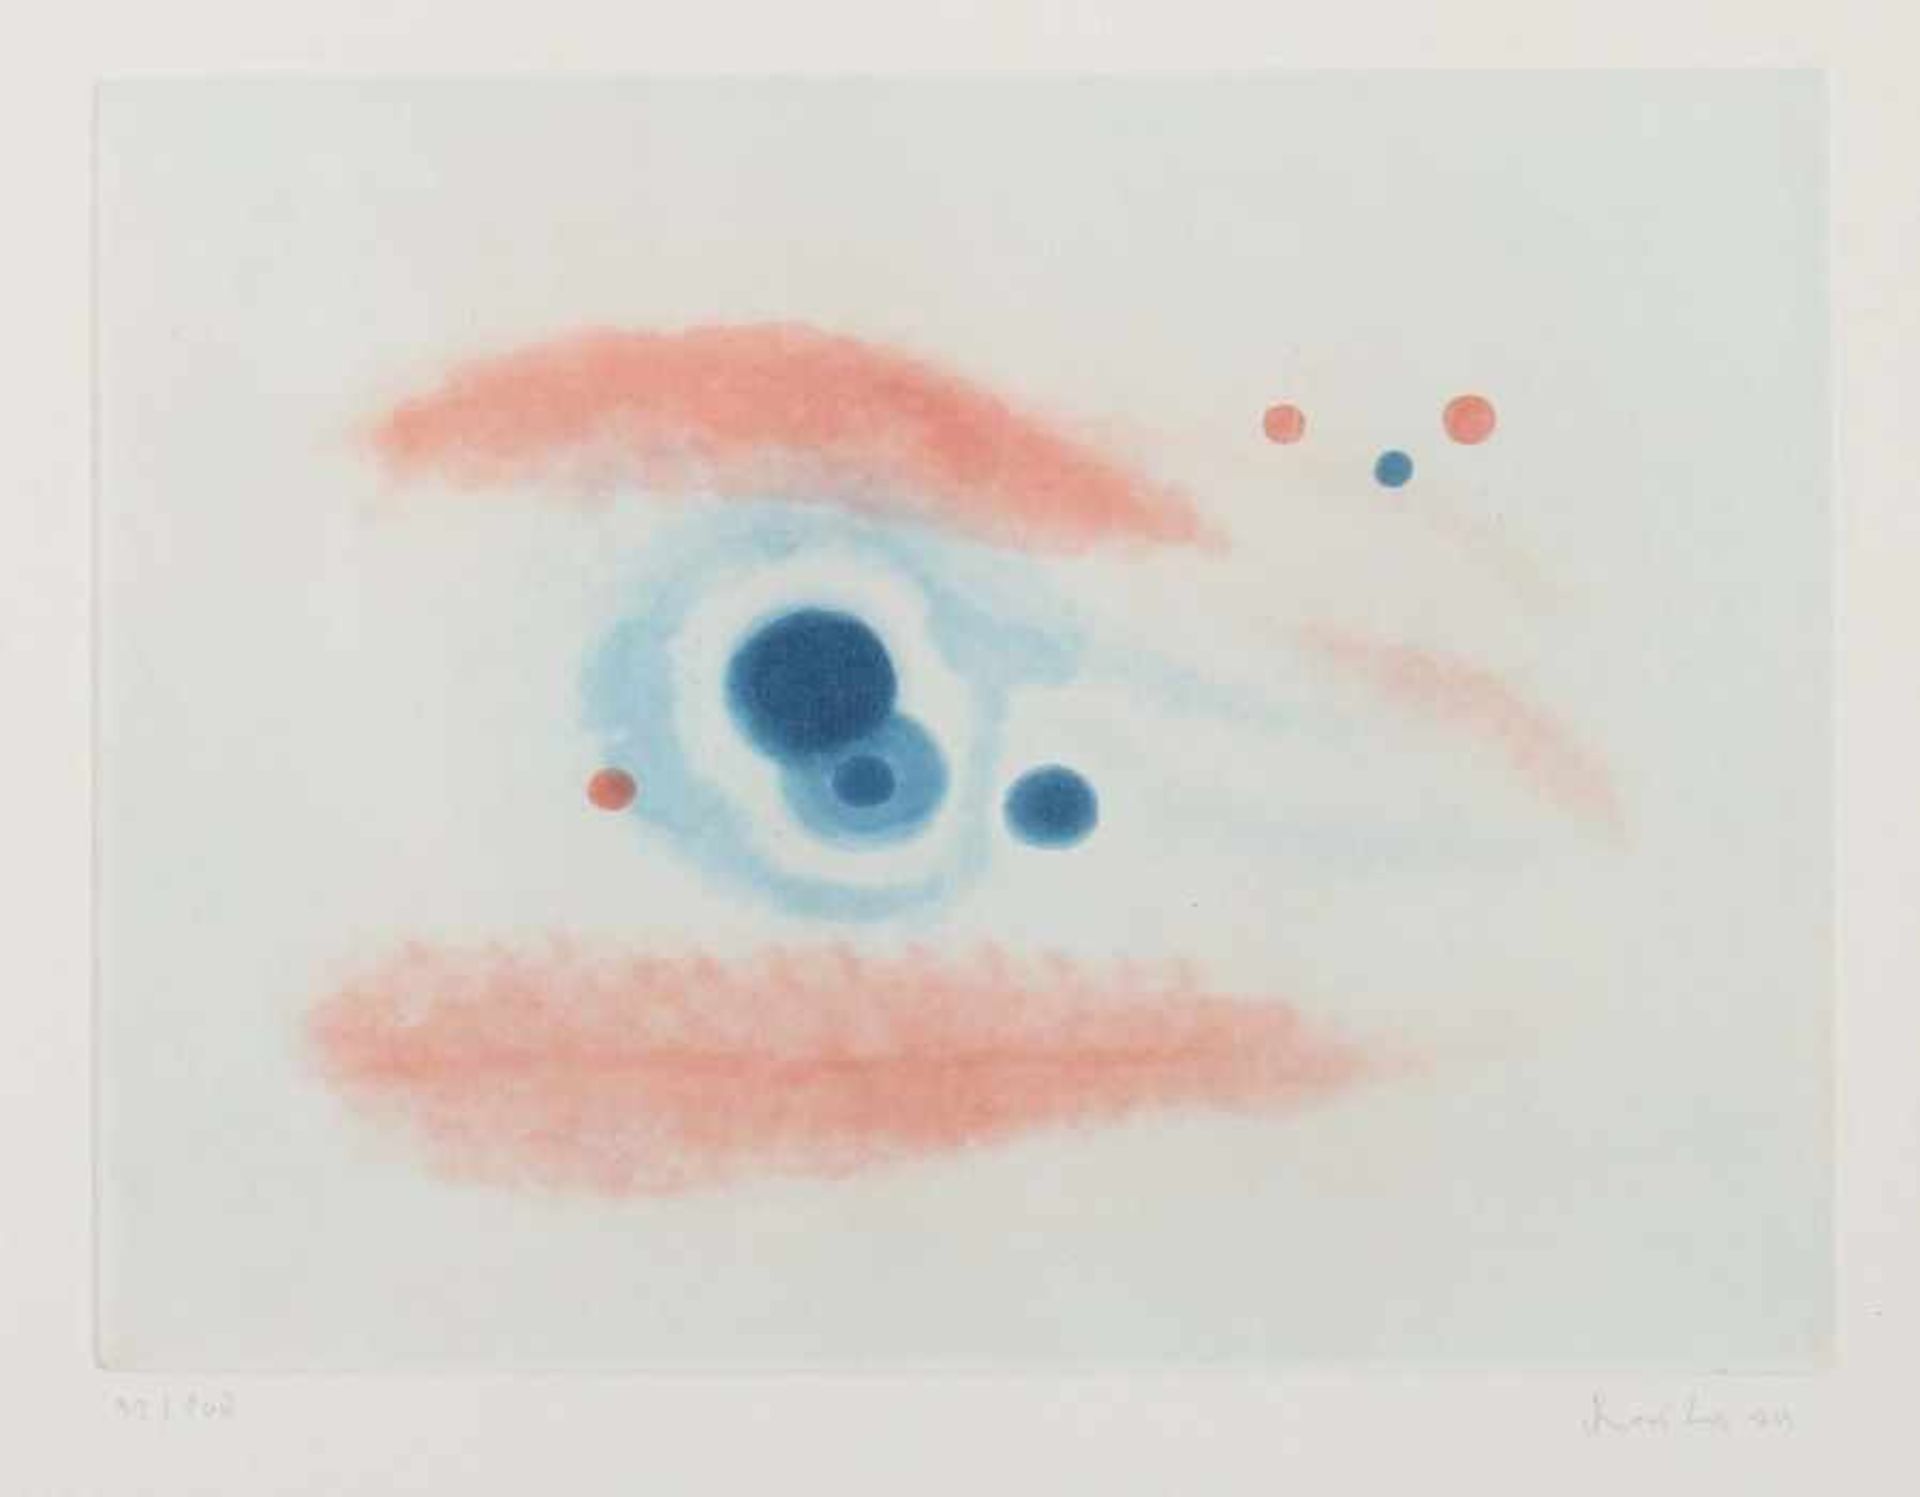 Künstler des 20. Jh. "Ohne Titel", abstrakte Komposition in Blau und Rot, unten rechts von Hand